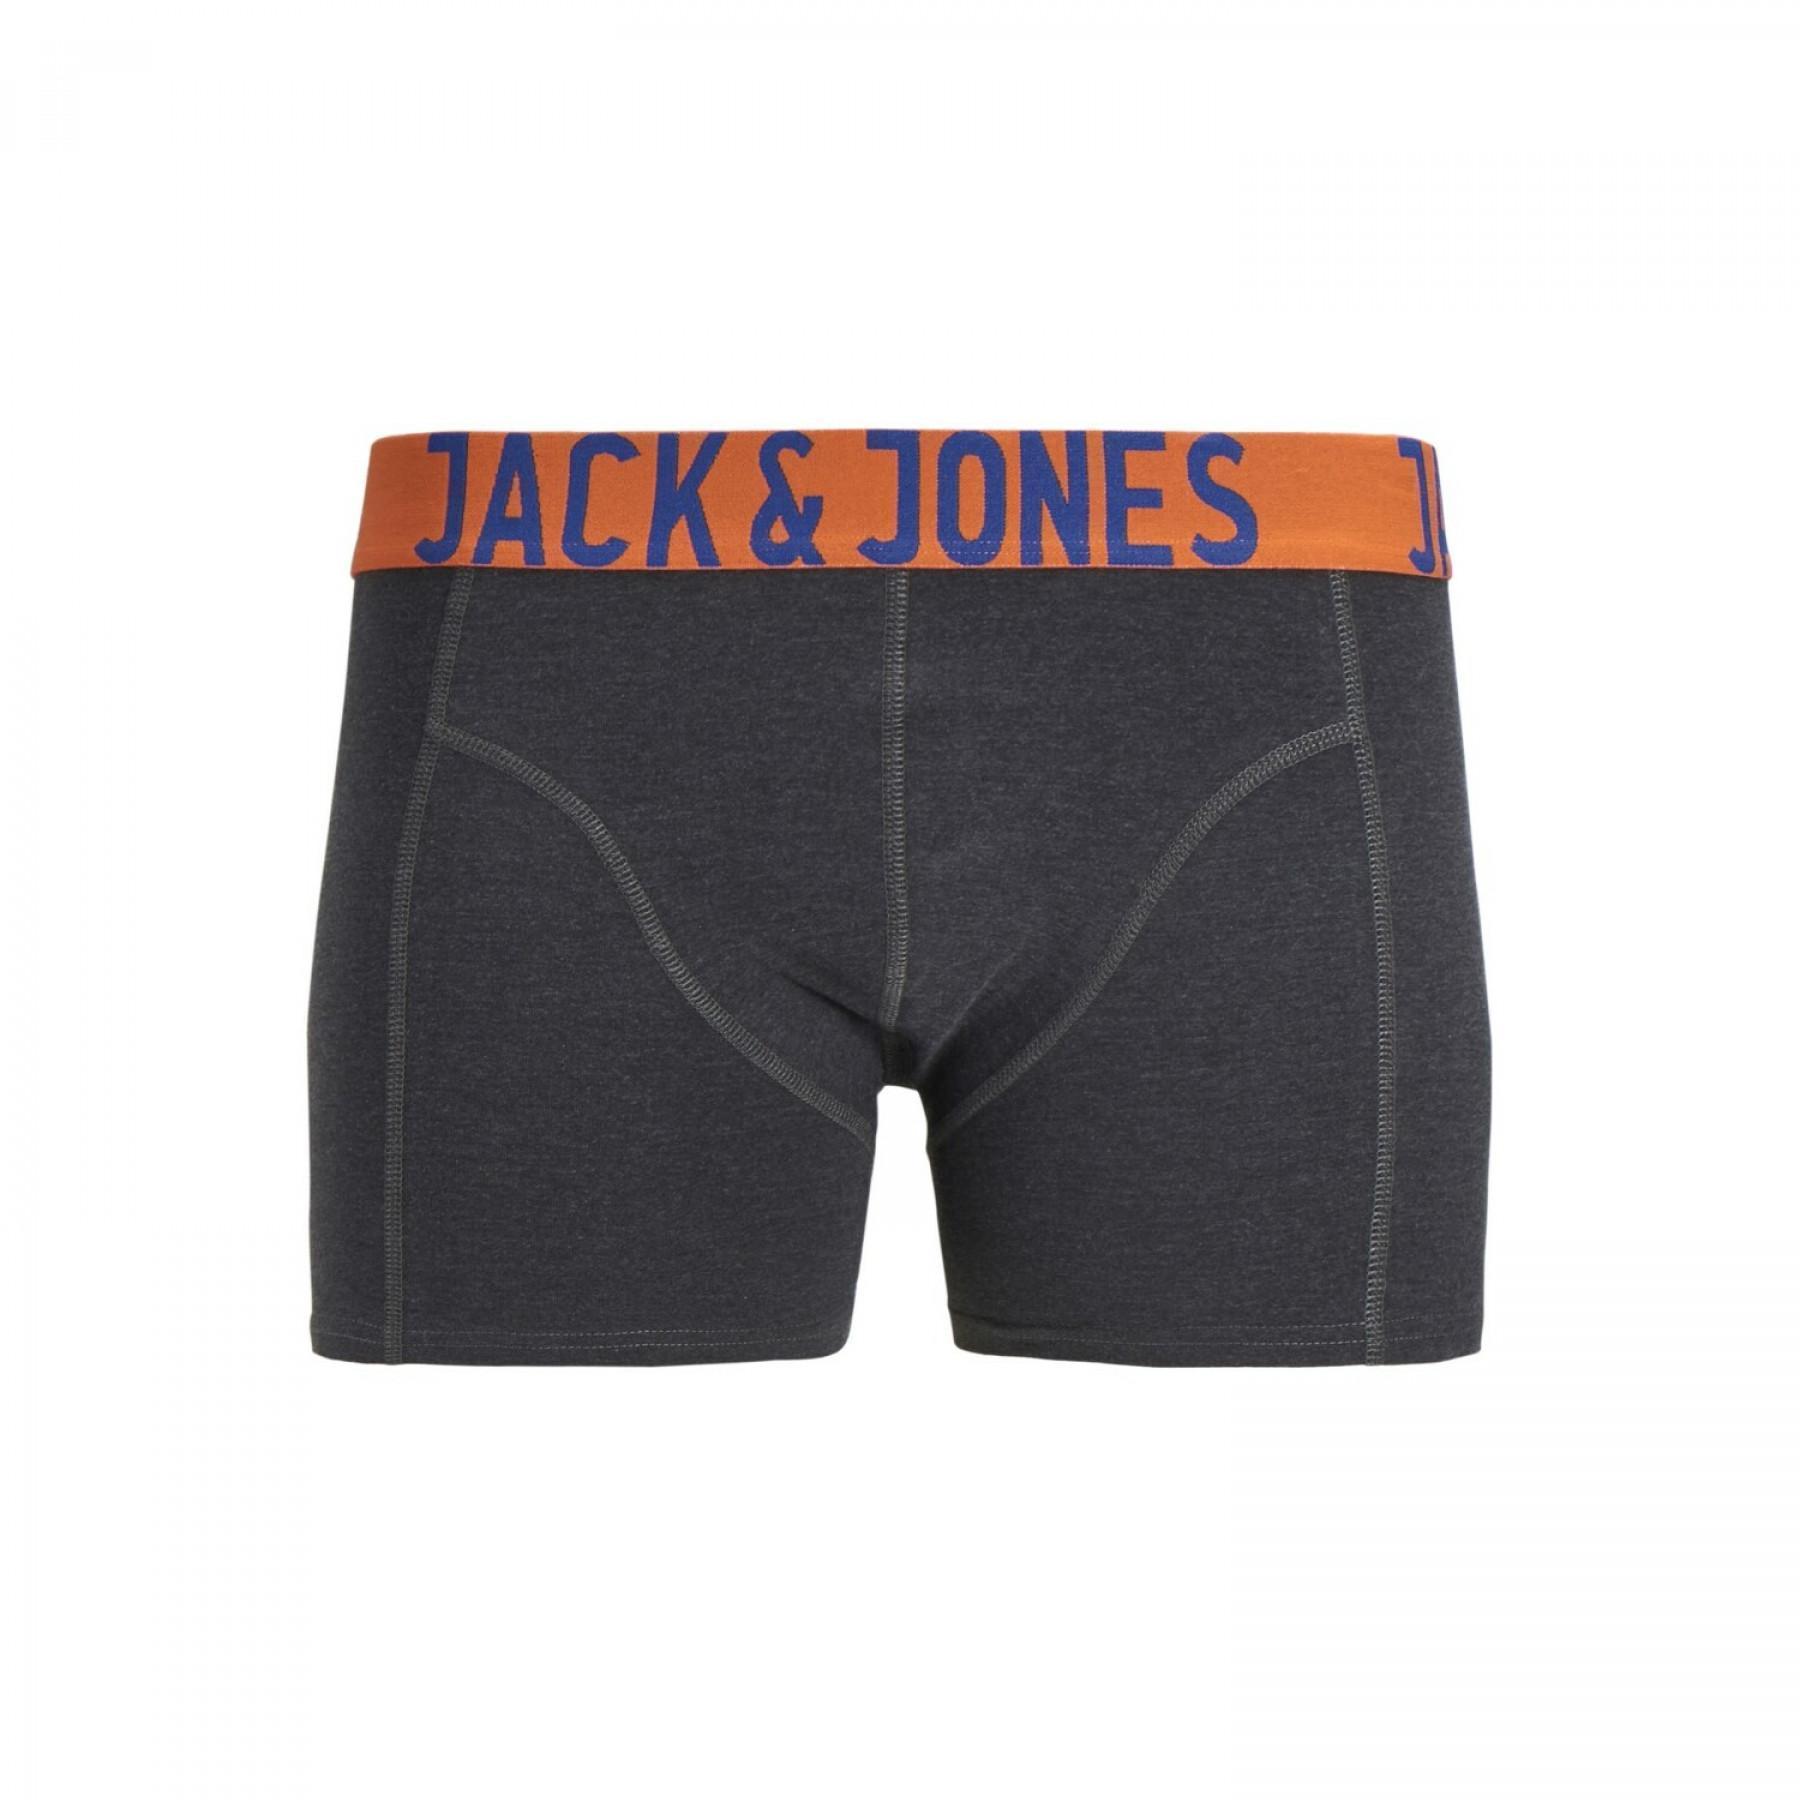 3er-Set Boxershorts Jack & Jones Jaccrazy solide